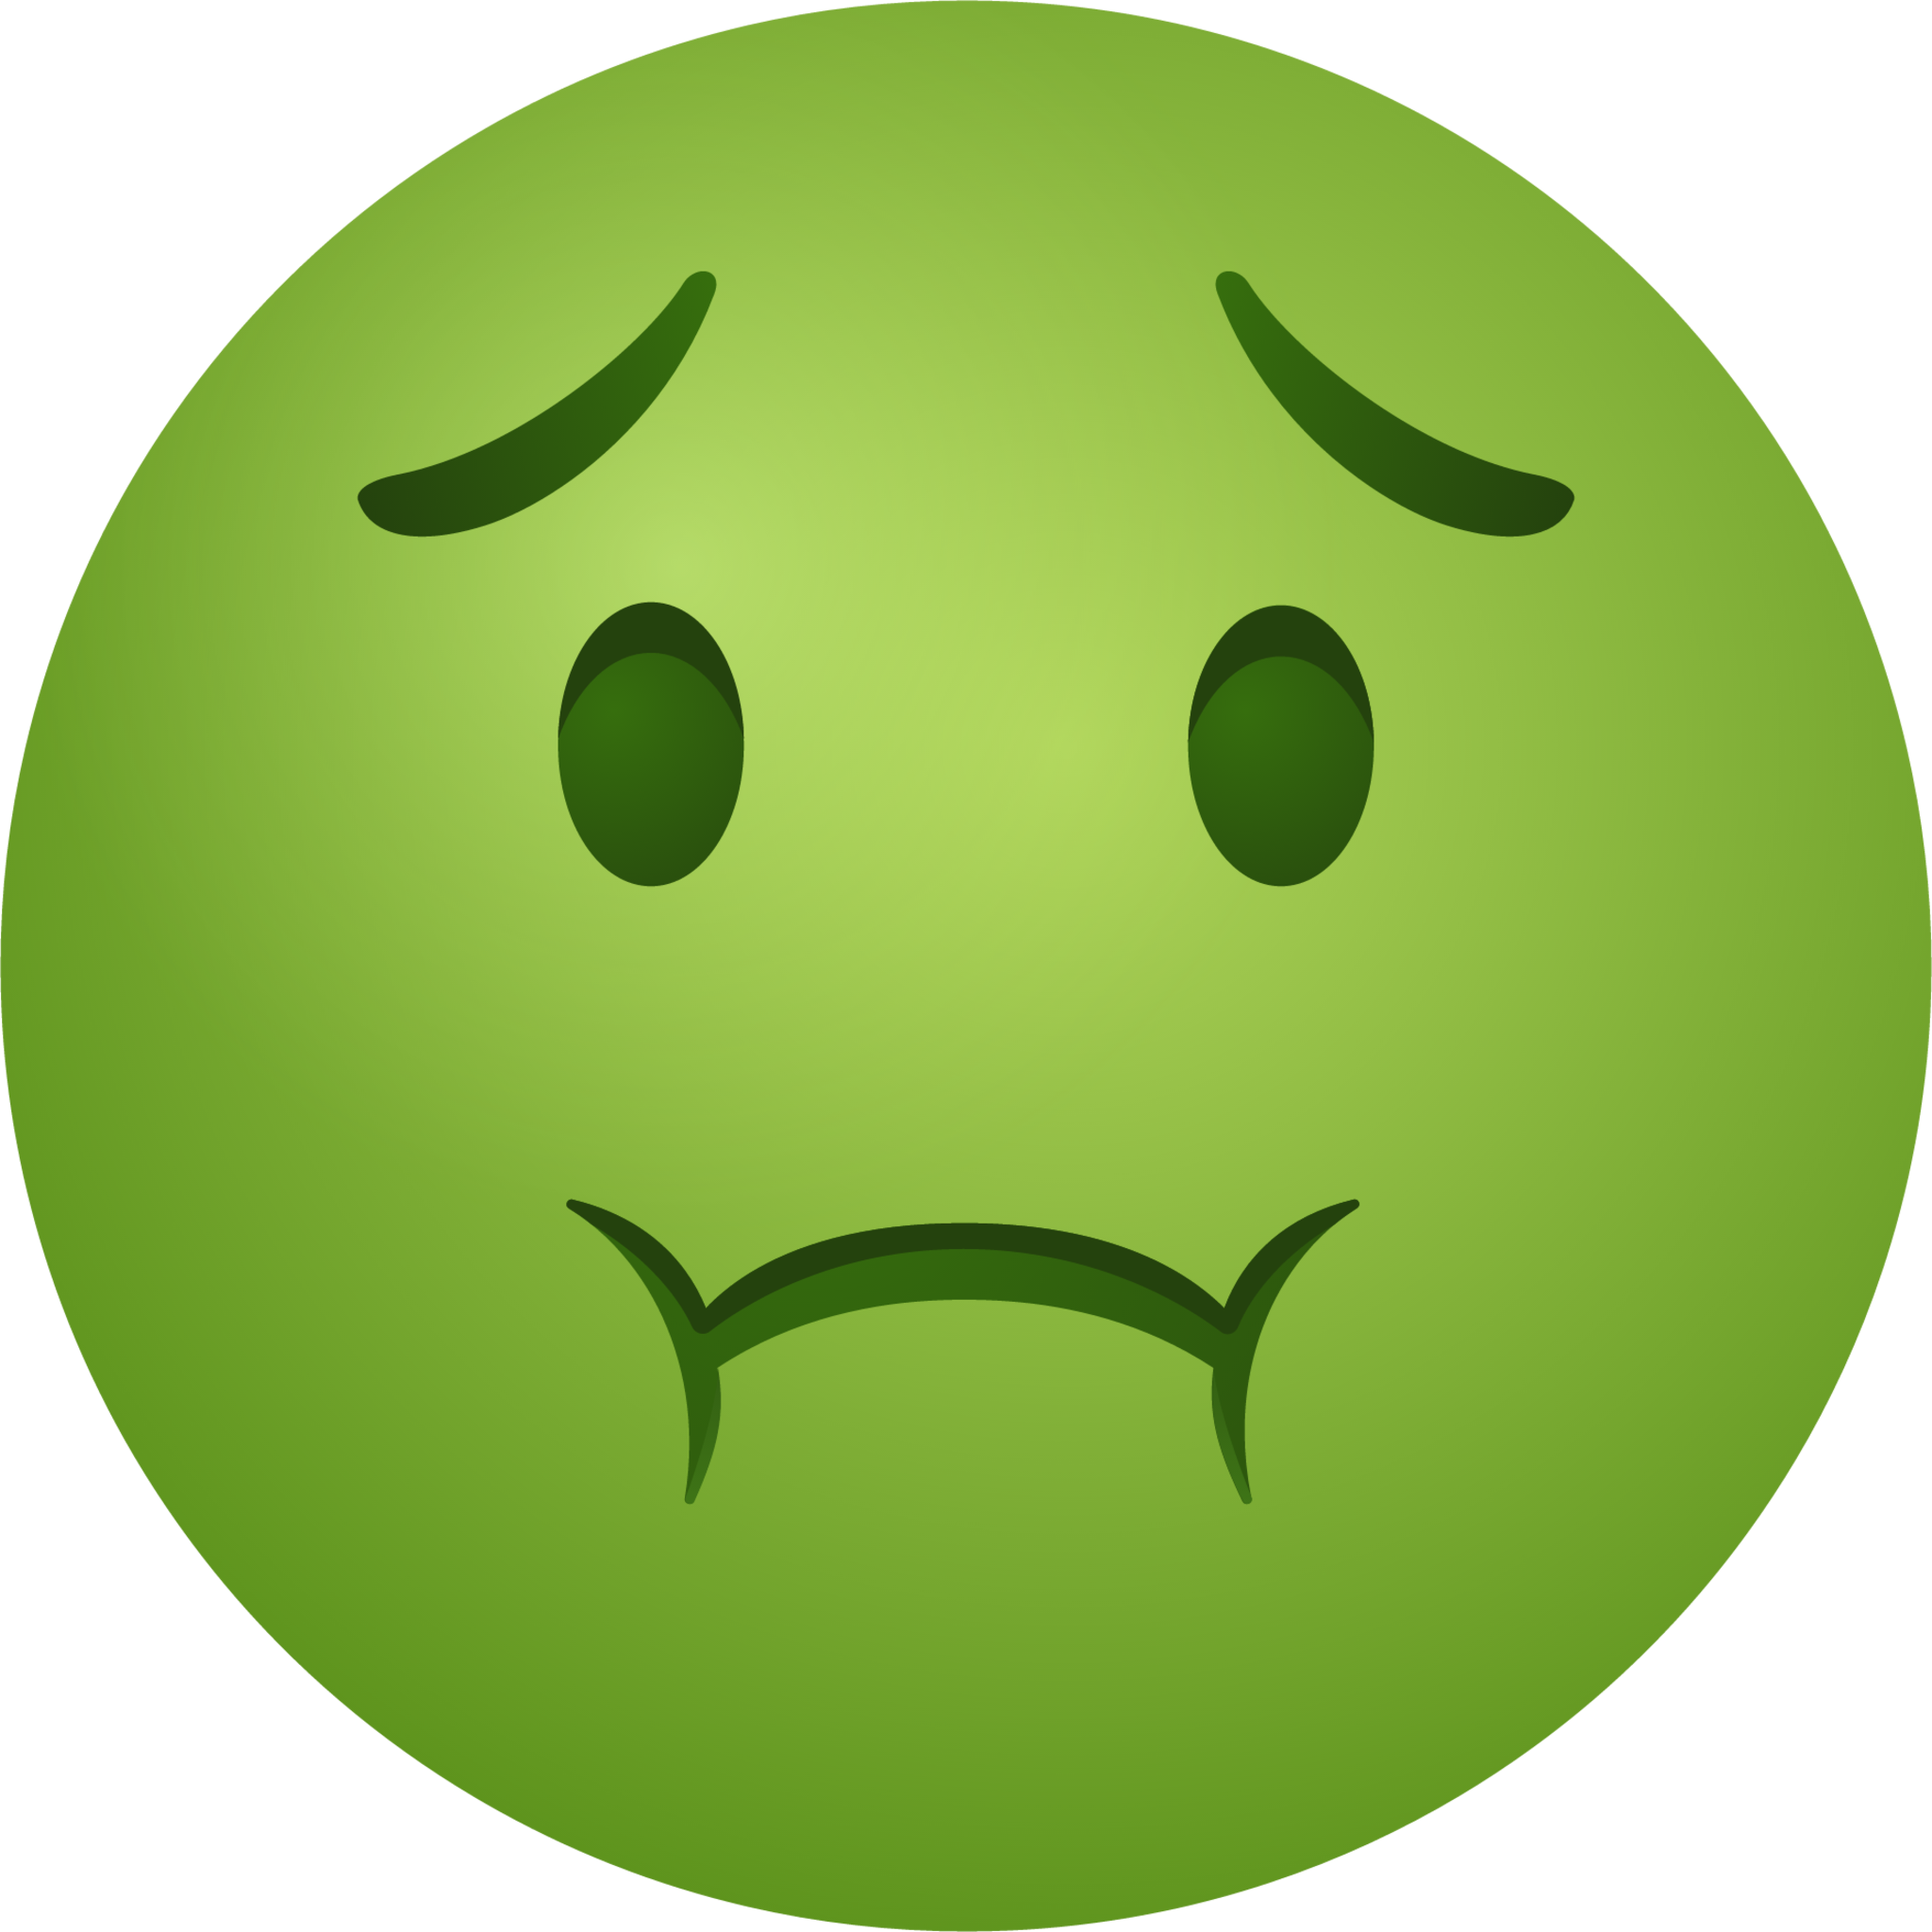 Nauseated face emoji emoji